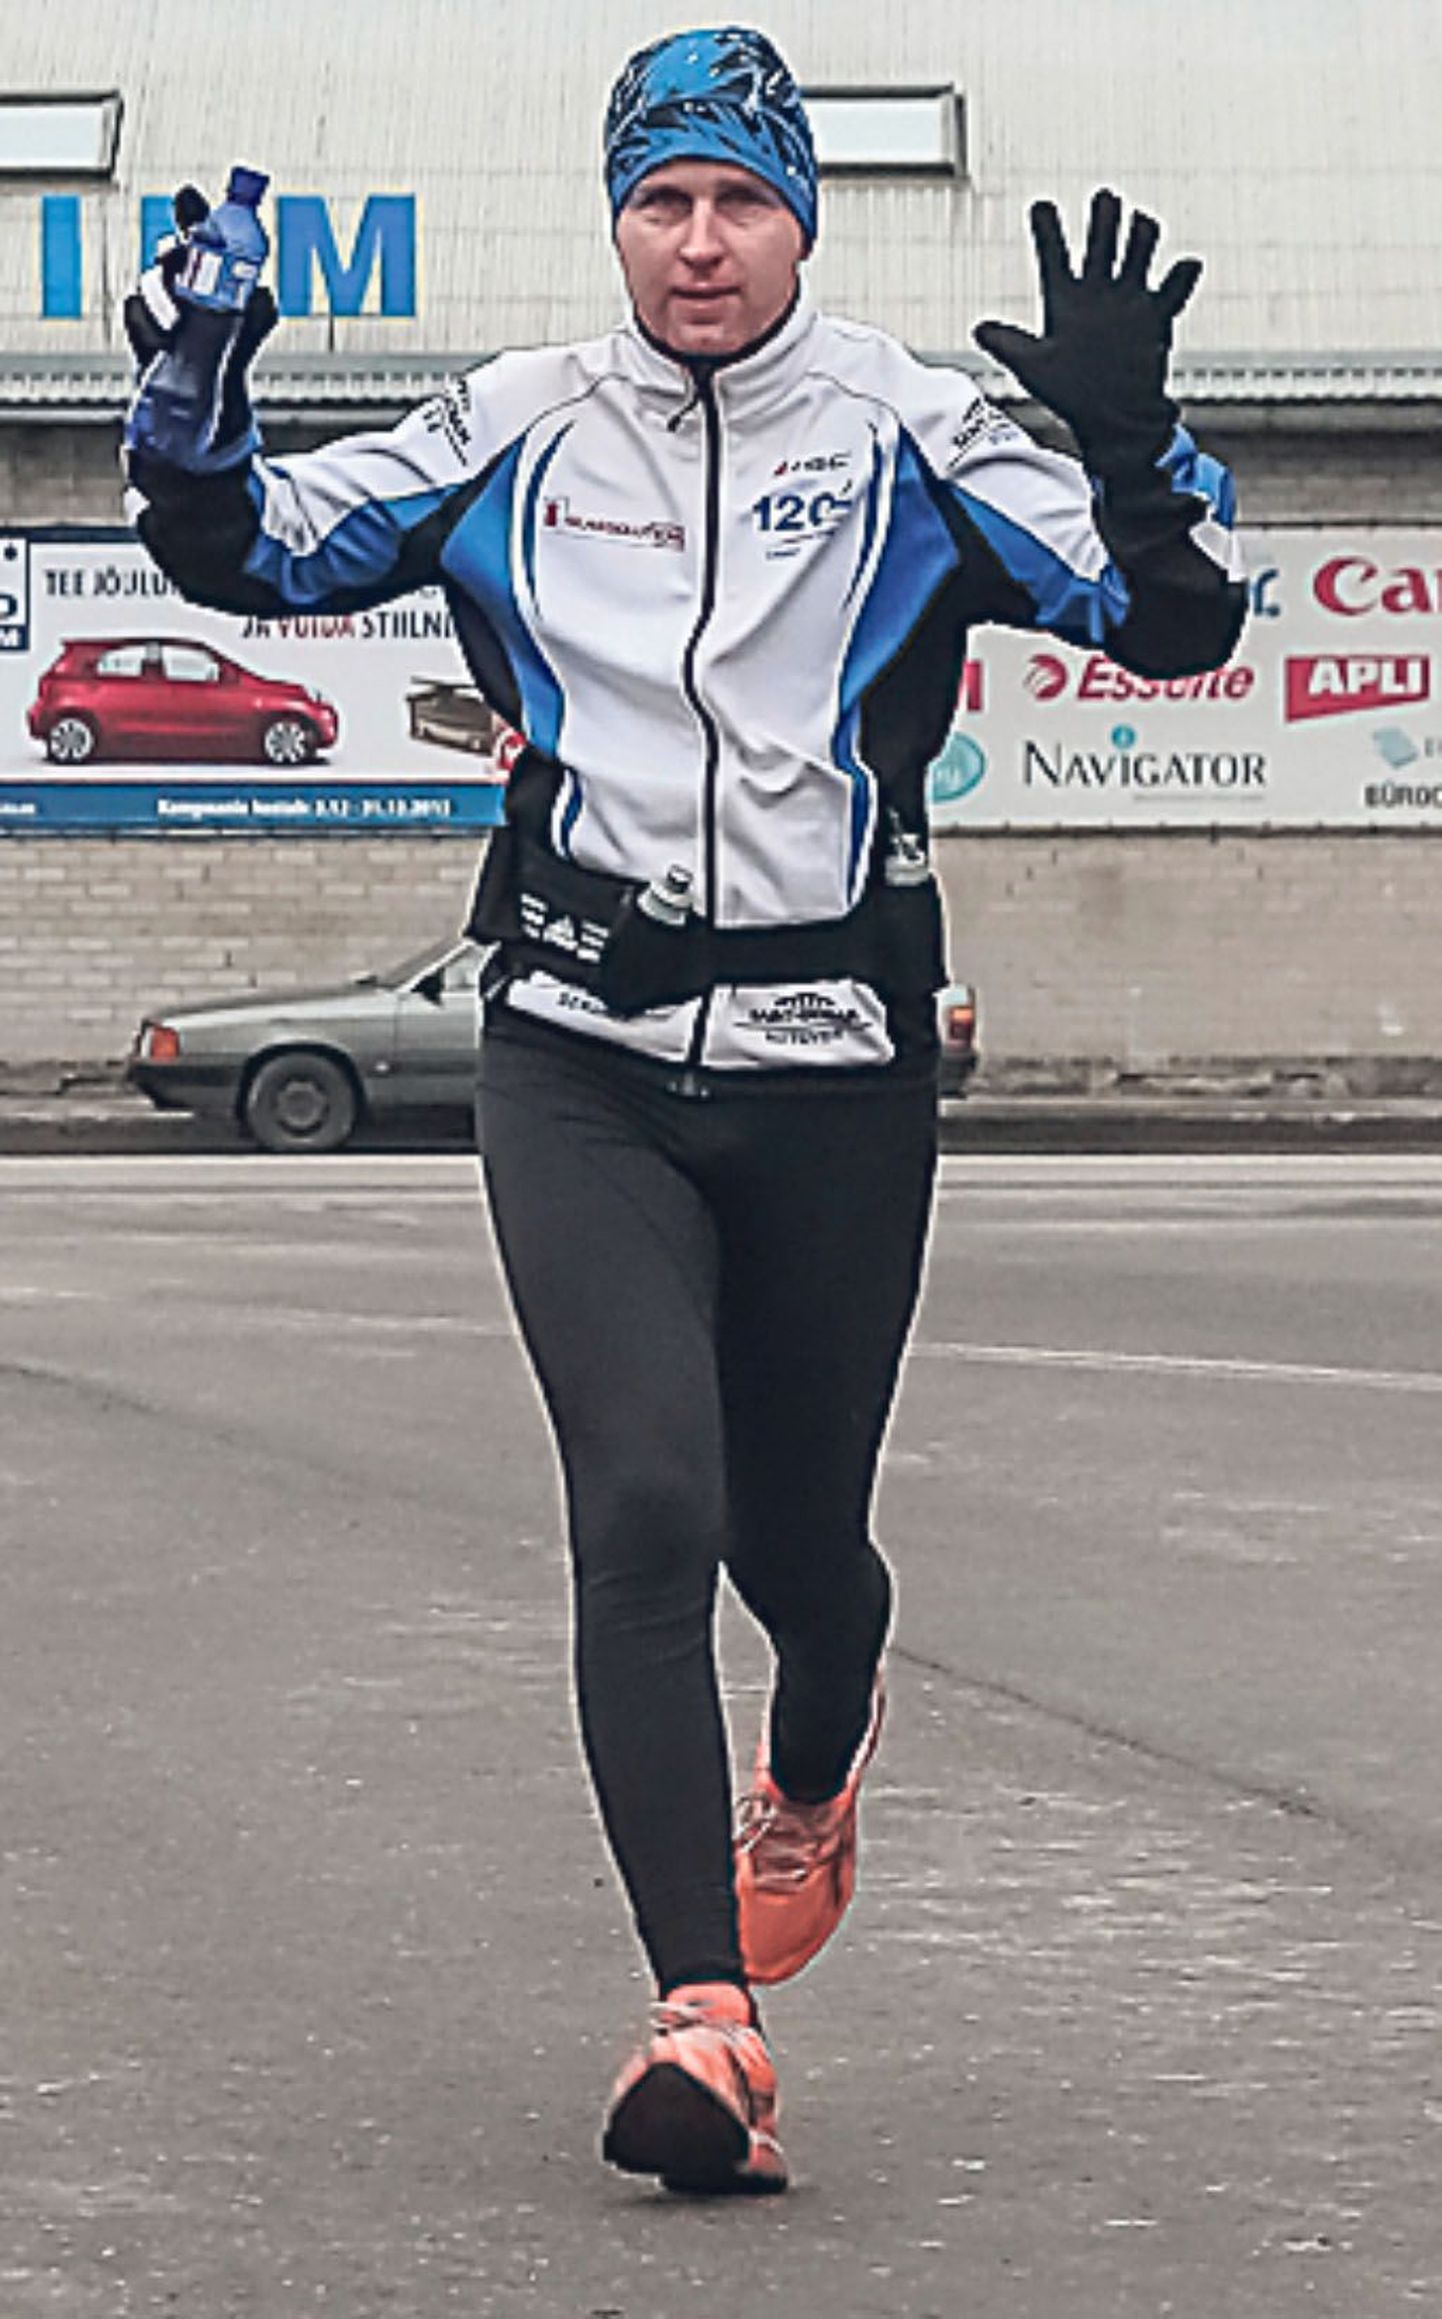 Elva mees Kaarel Tõruvere saatis vana aasta ära maratonijooksuga Vändrast Pärnusse.